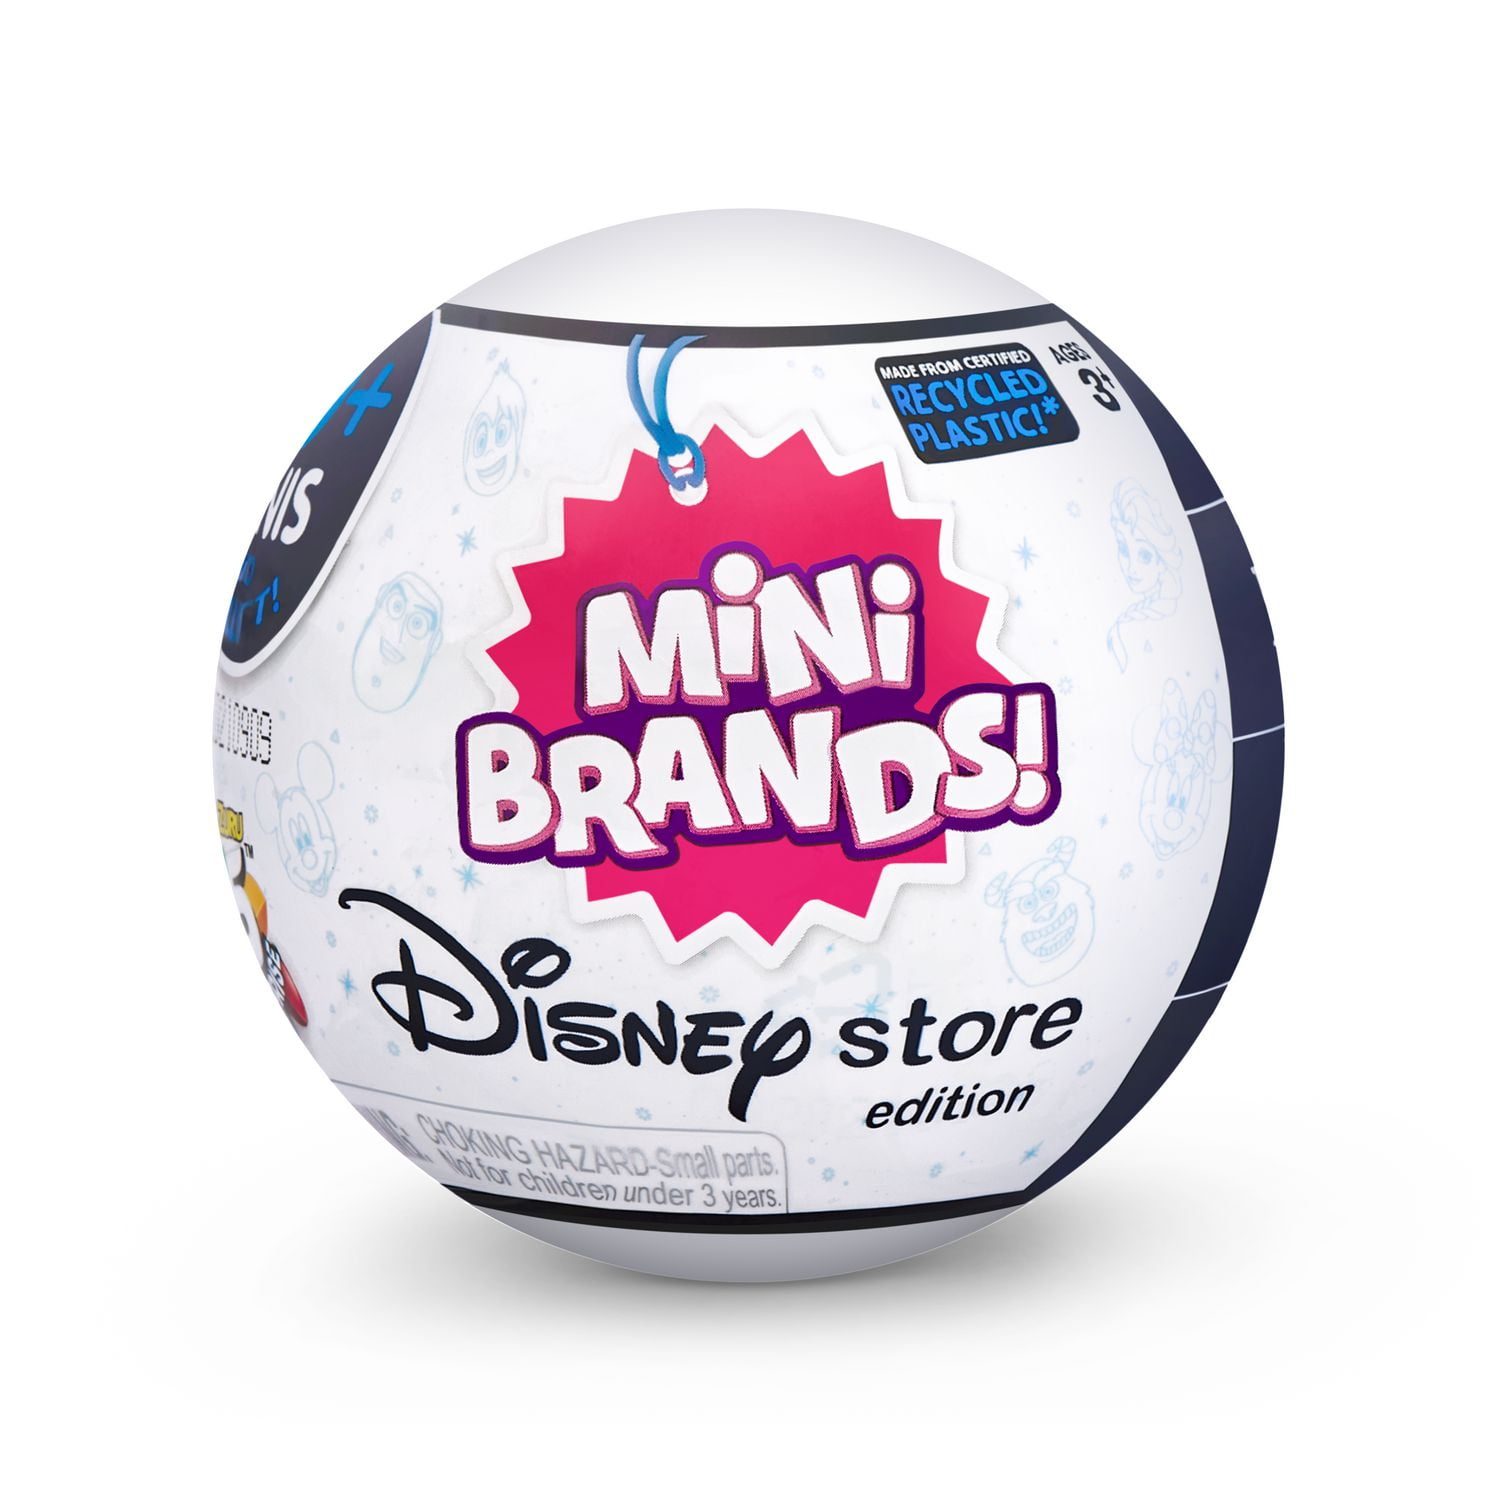 Toy Mini Brands ADVENT CALENDAR Unboxing!!! Zuru 5 Surprise Mini